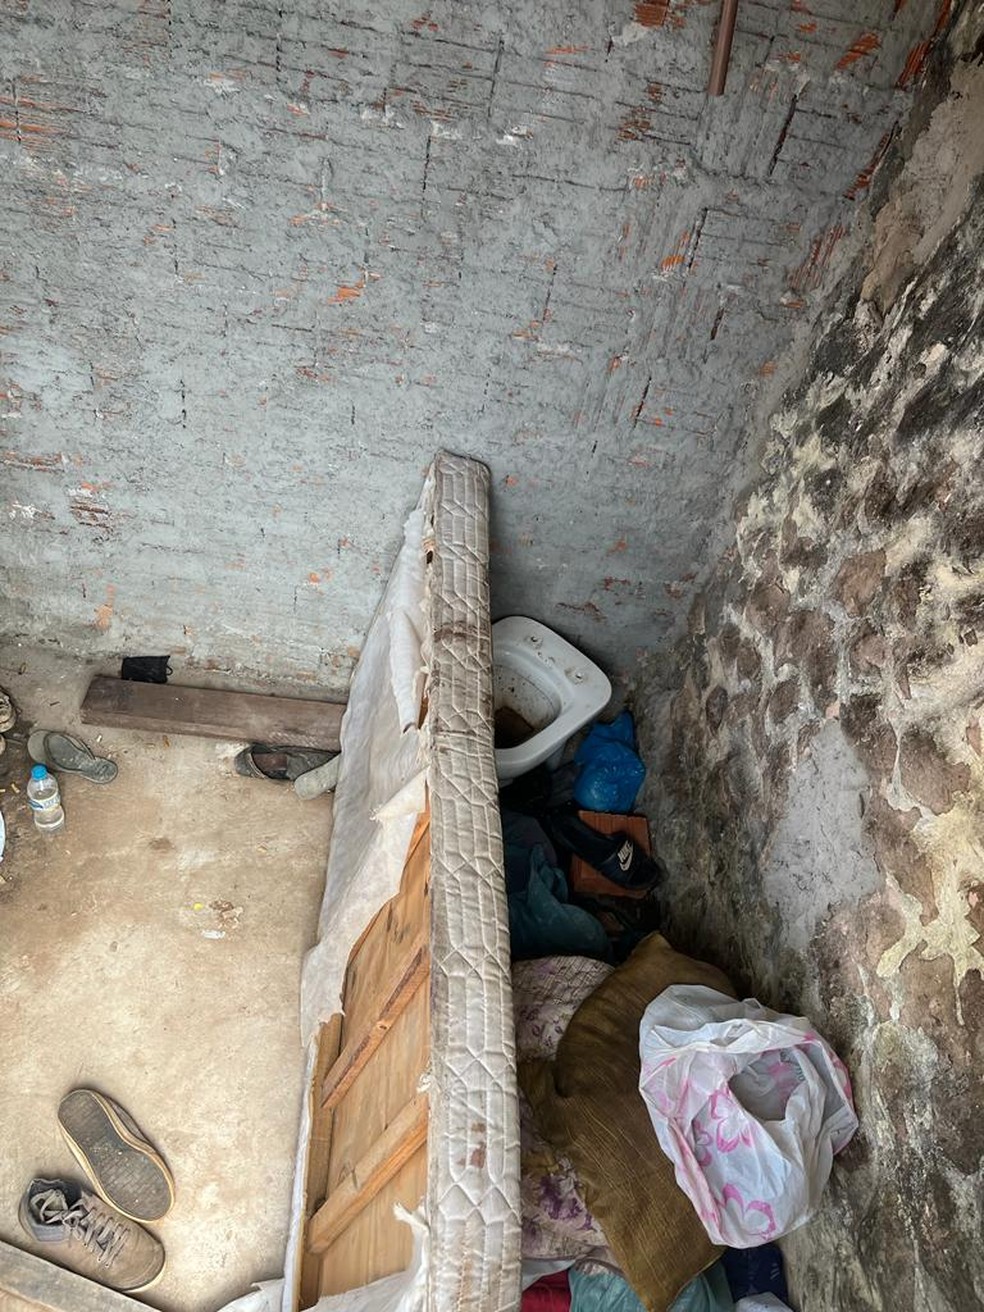 Homem dormia sobre estrados de uma cama, sem colchão, que apresentava mofo, rasgos e muita sujeira — Foto: MPT/Divulgação